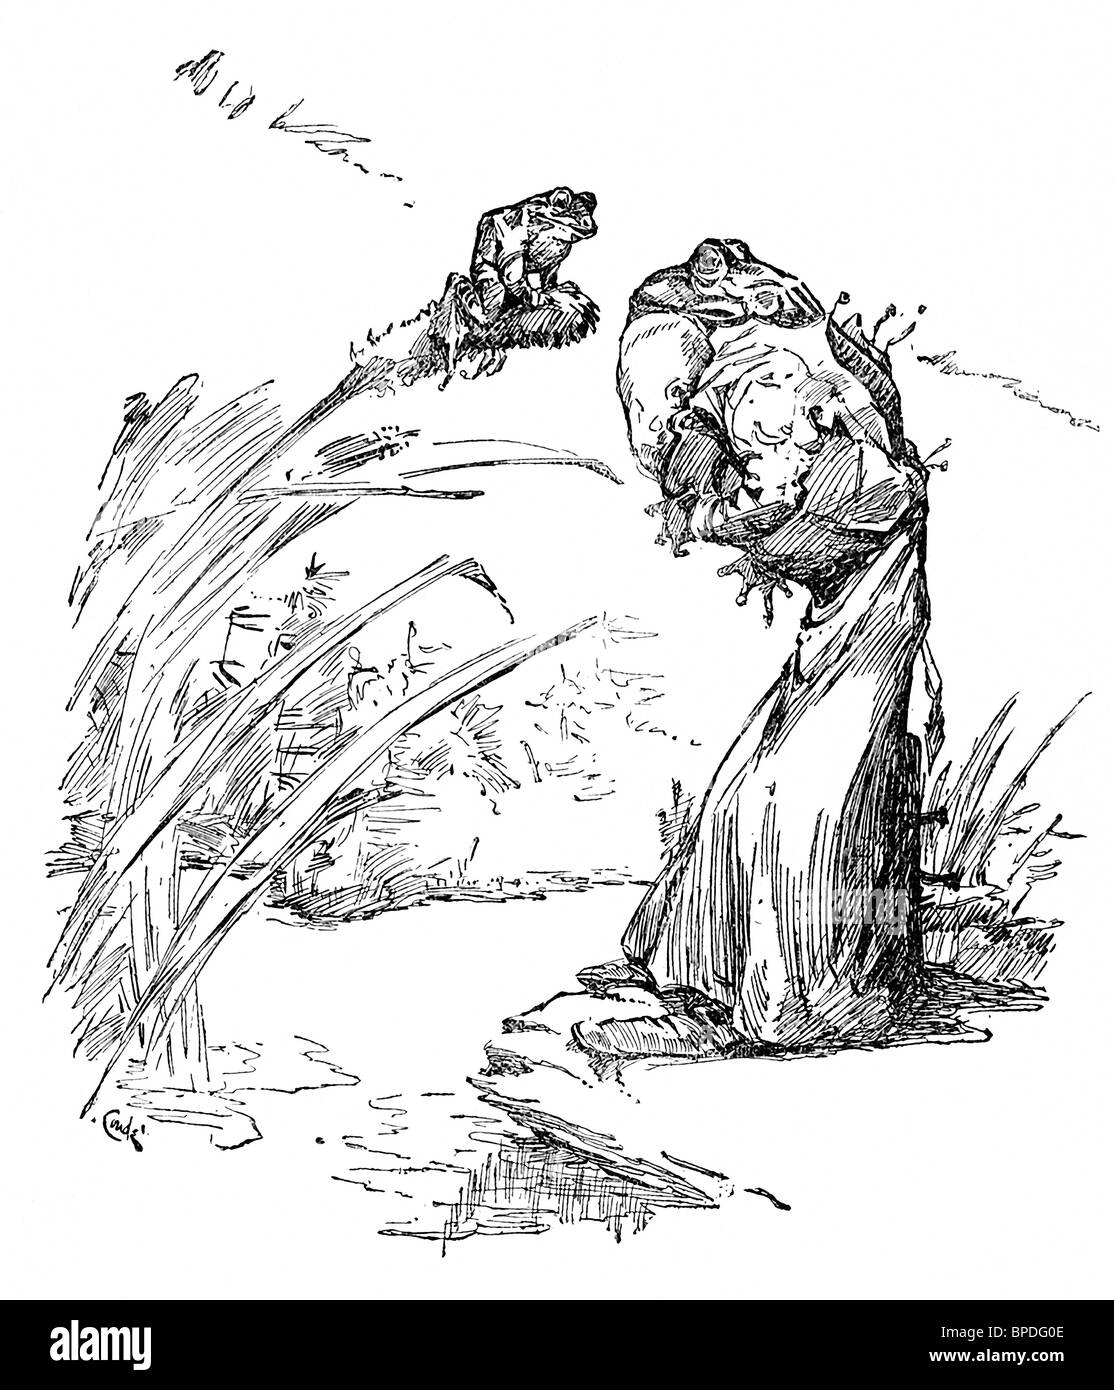 J.m. Conde, dargestellt im Jahre 1905, die Geschichten von den legendären griechischen Fablist Aesop, einschließlich die Geschichte von der Ochse und der Frosch. Stockfoto